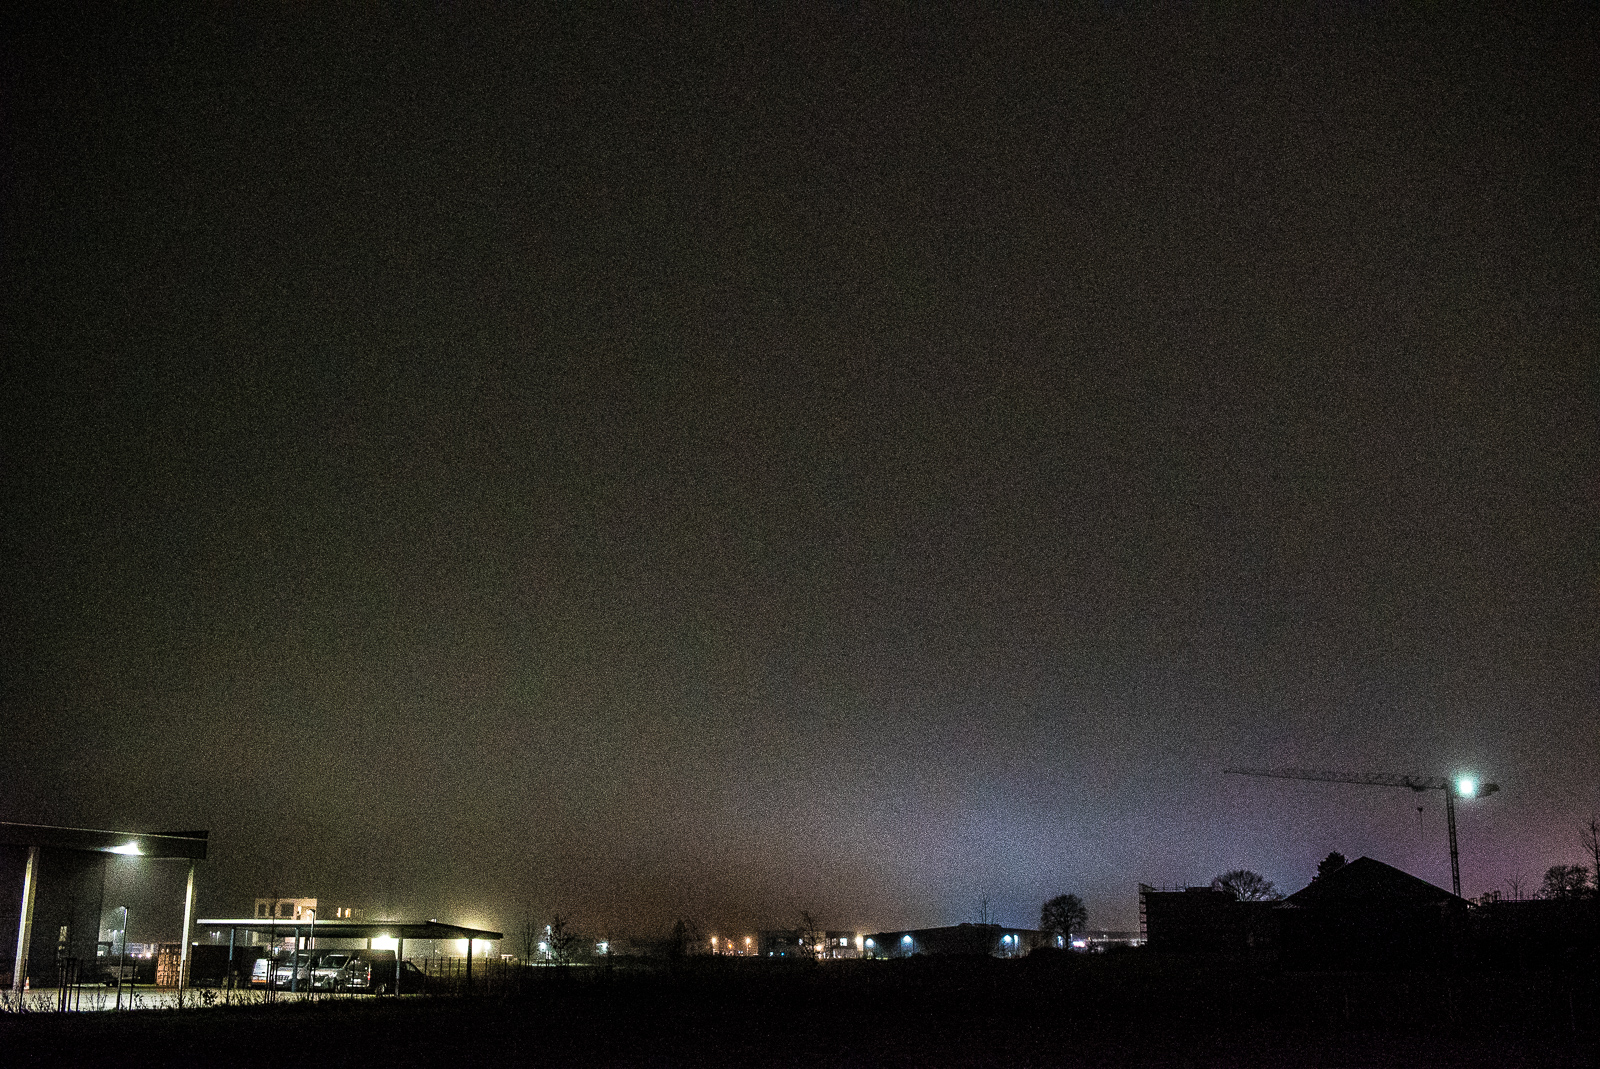 Nachtaufnahme: Carport und Kran vor Nachthimmel